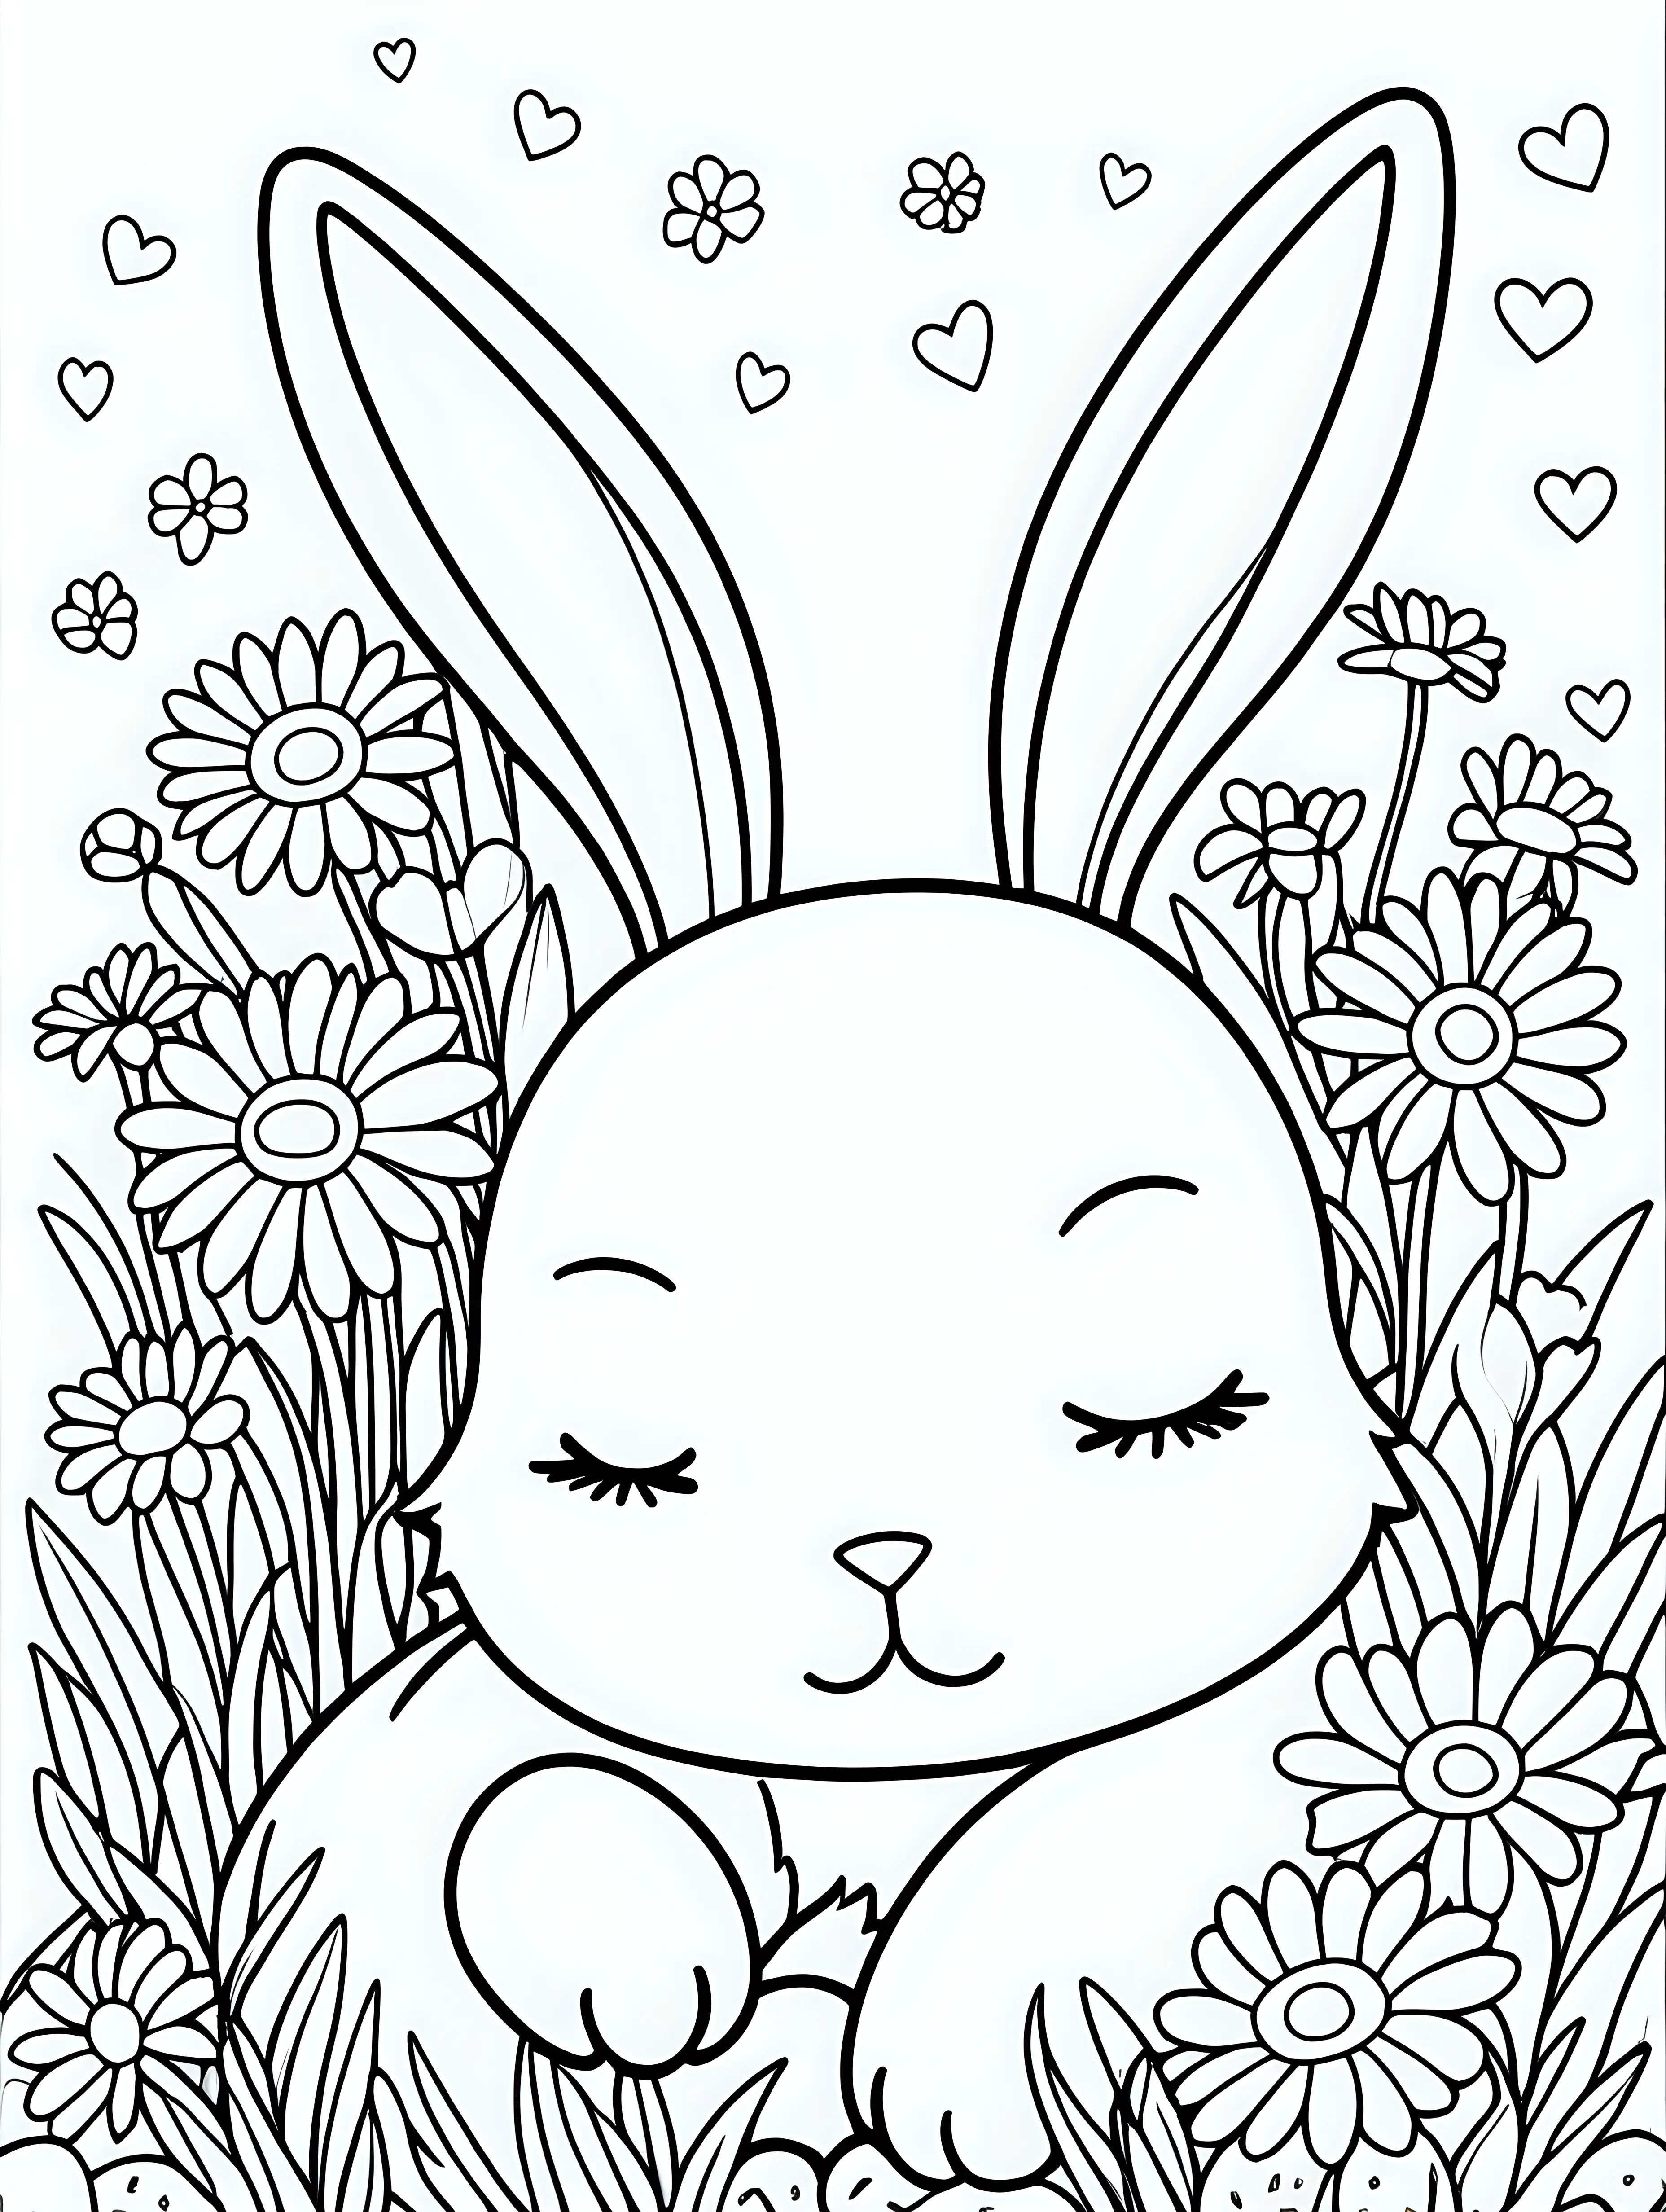 Adorable Kawaii Bunny Sleeping Among Daisies Coloring Page